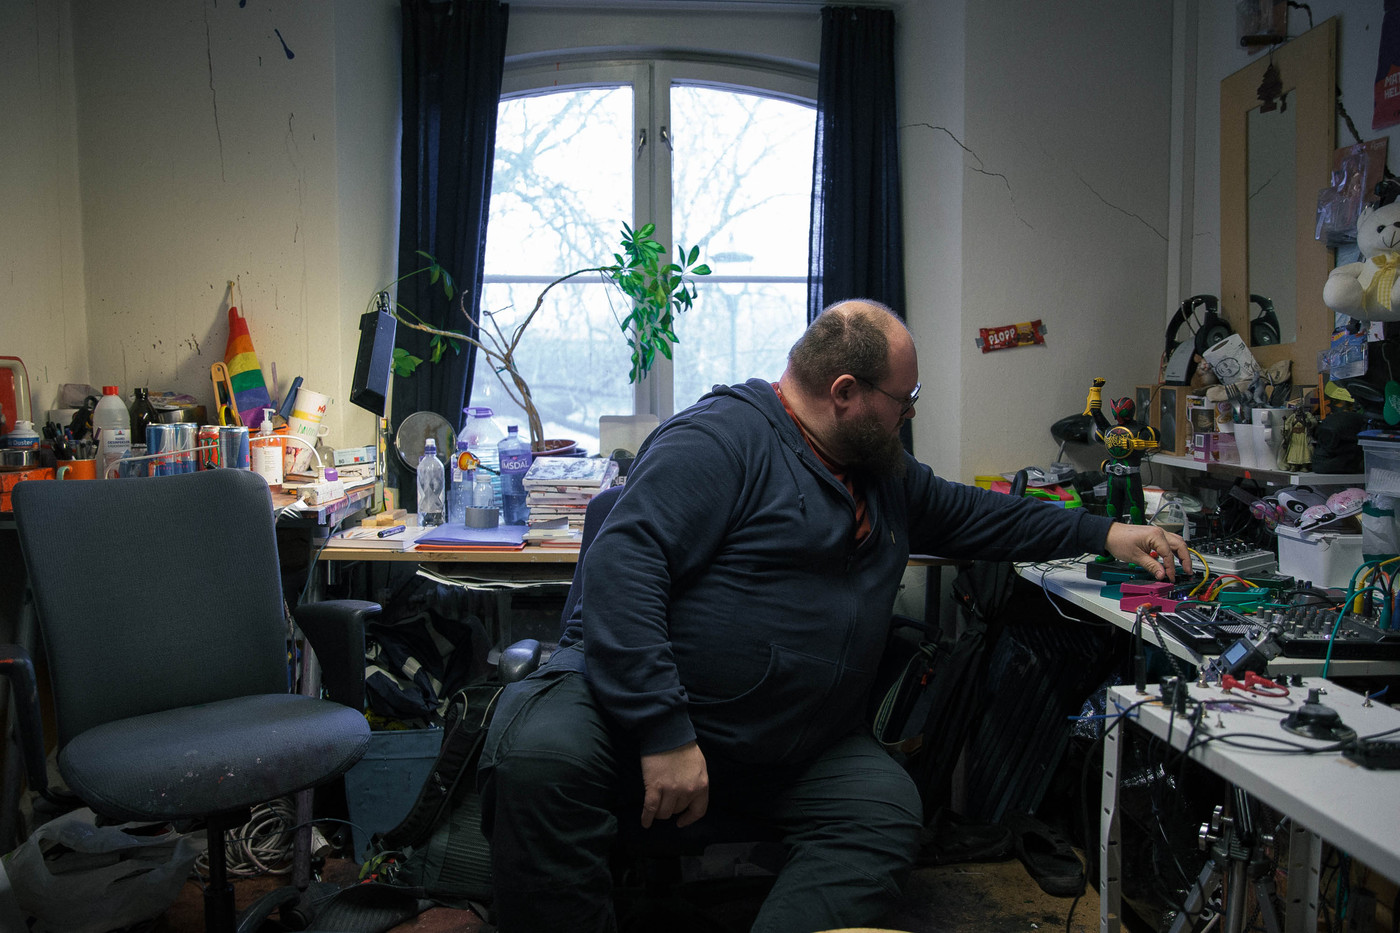 En kunstner sitter ved skrivebordet og vrir på knotter.